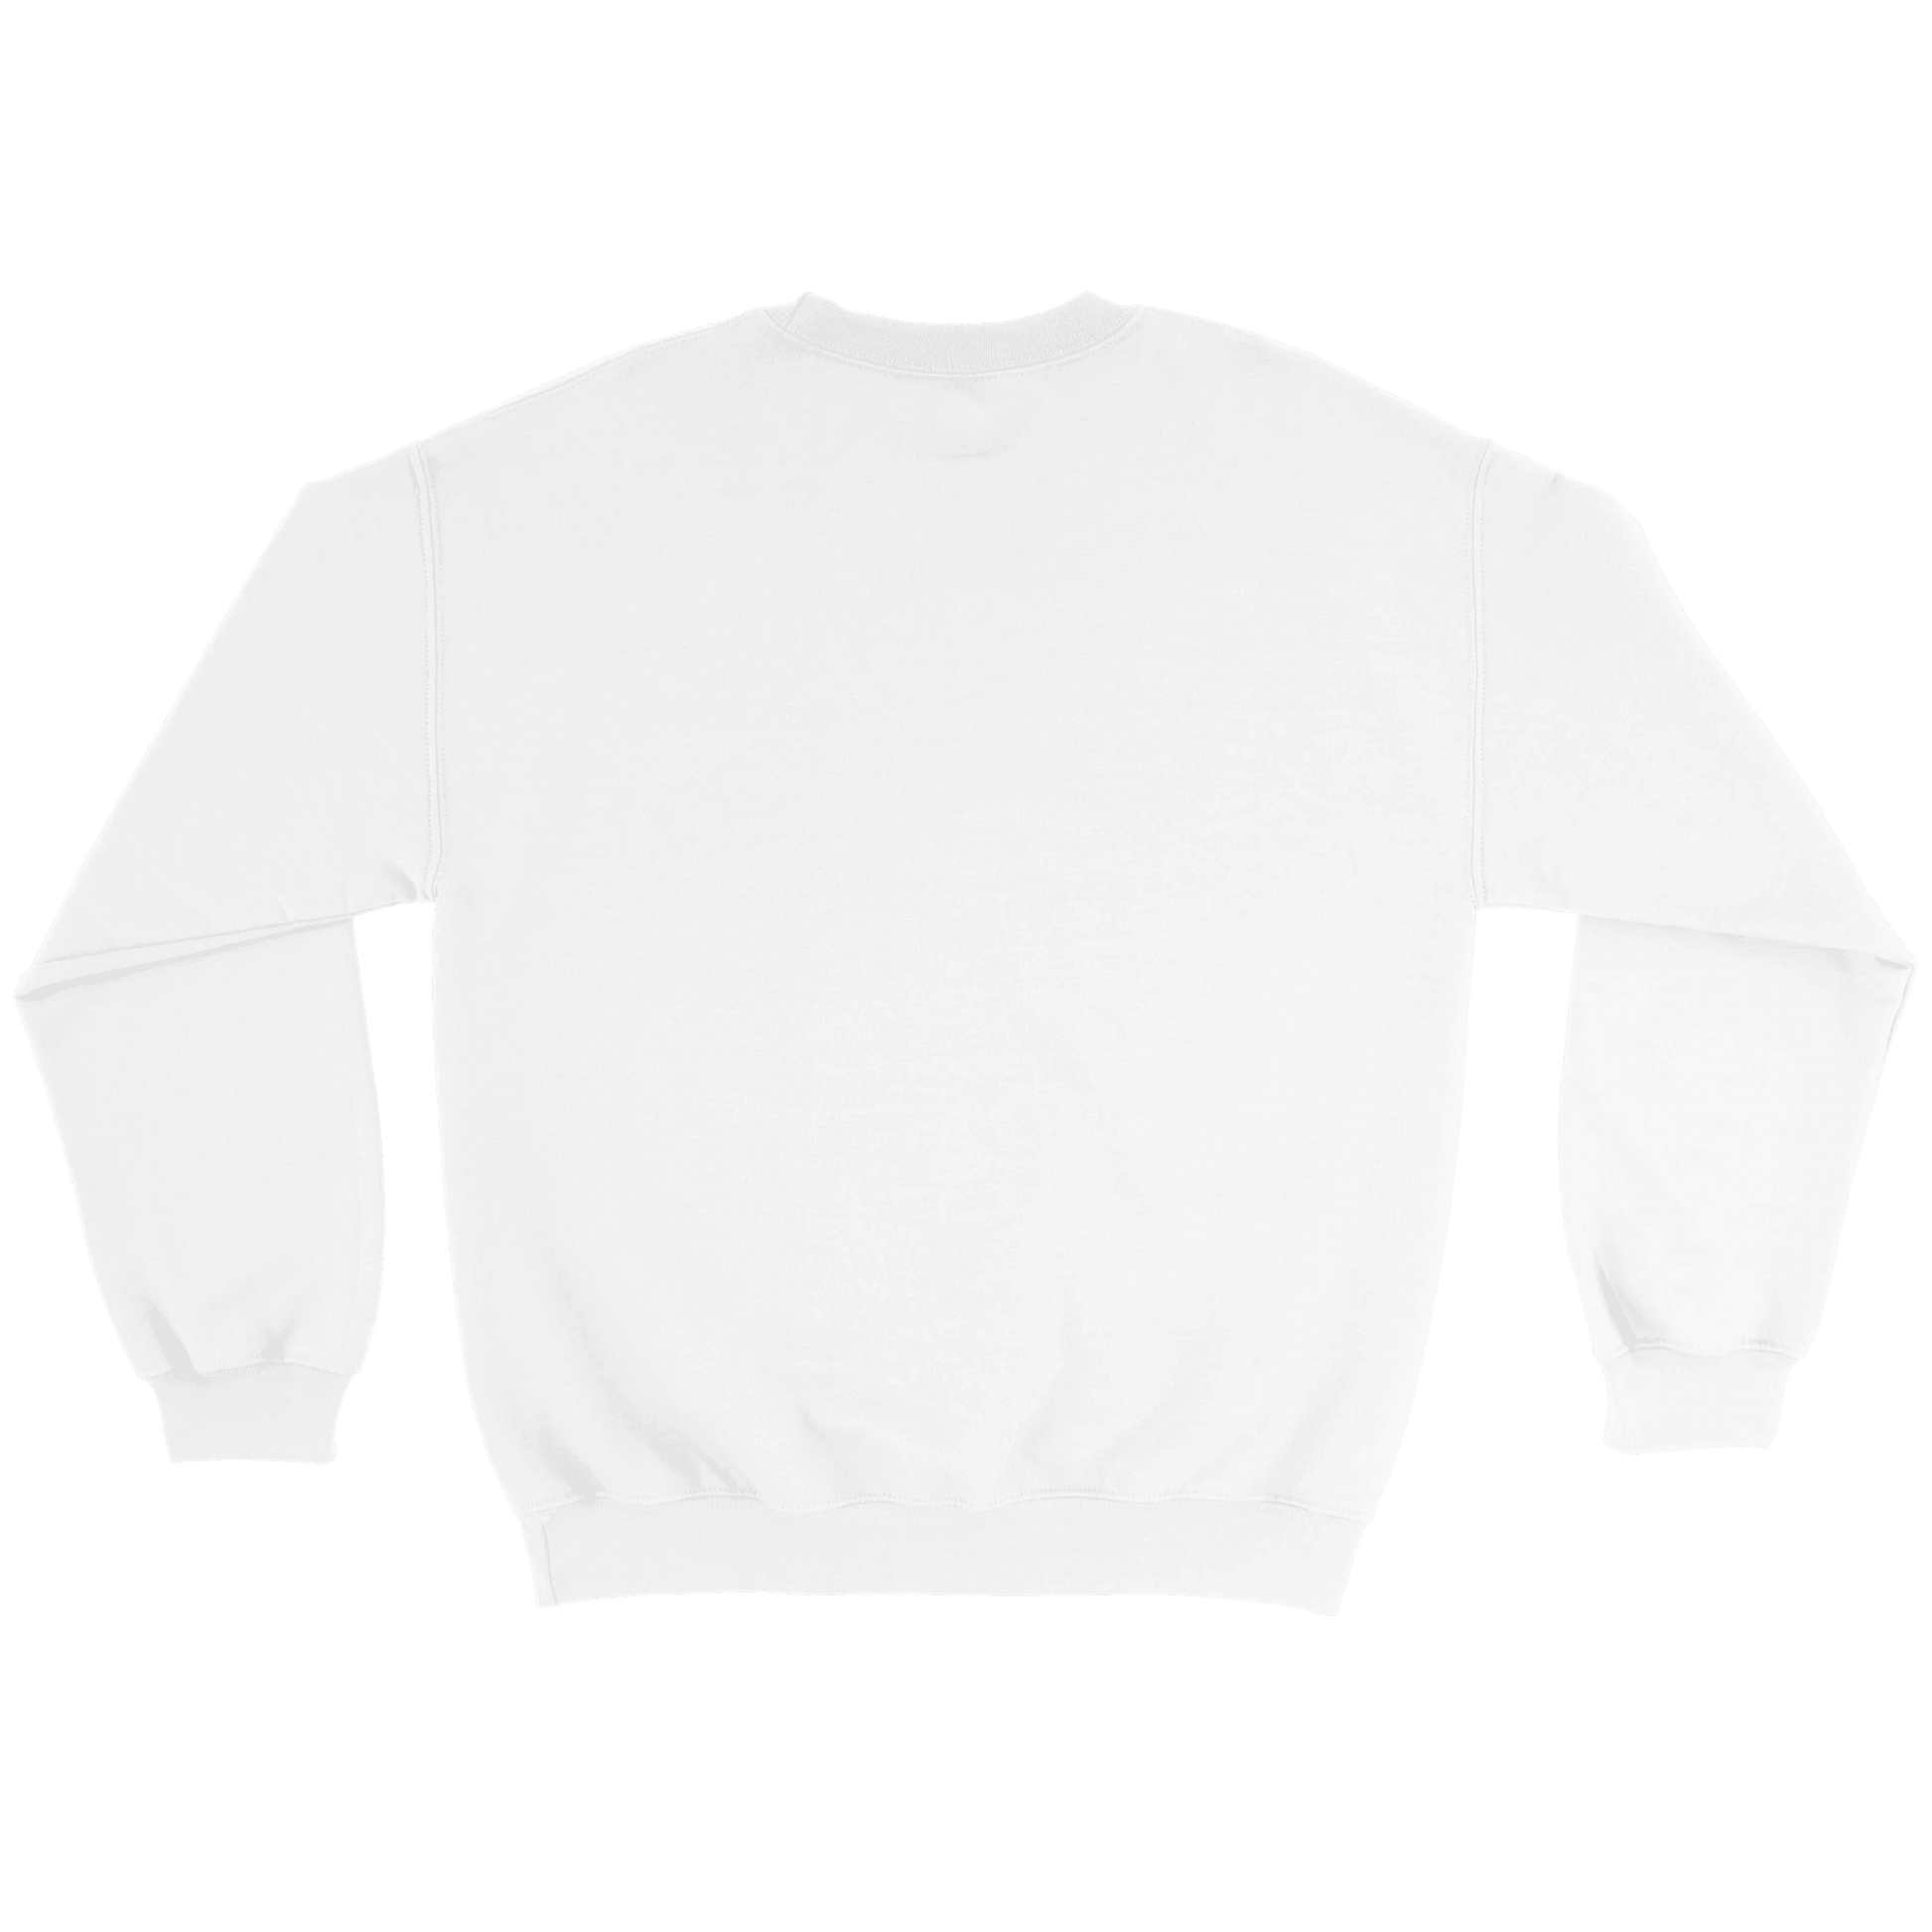 This is Prinskorv - Sweatshirt 